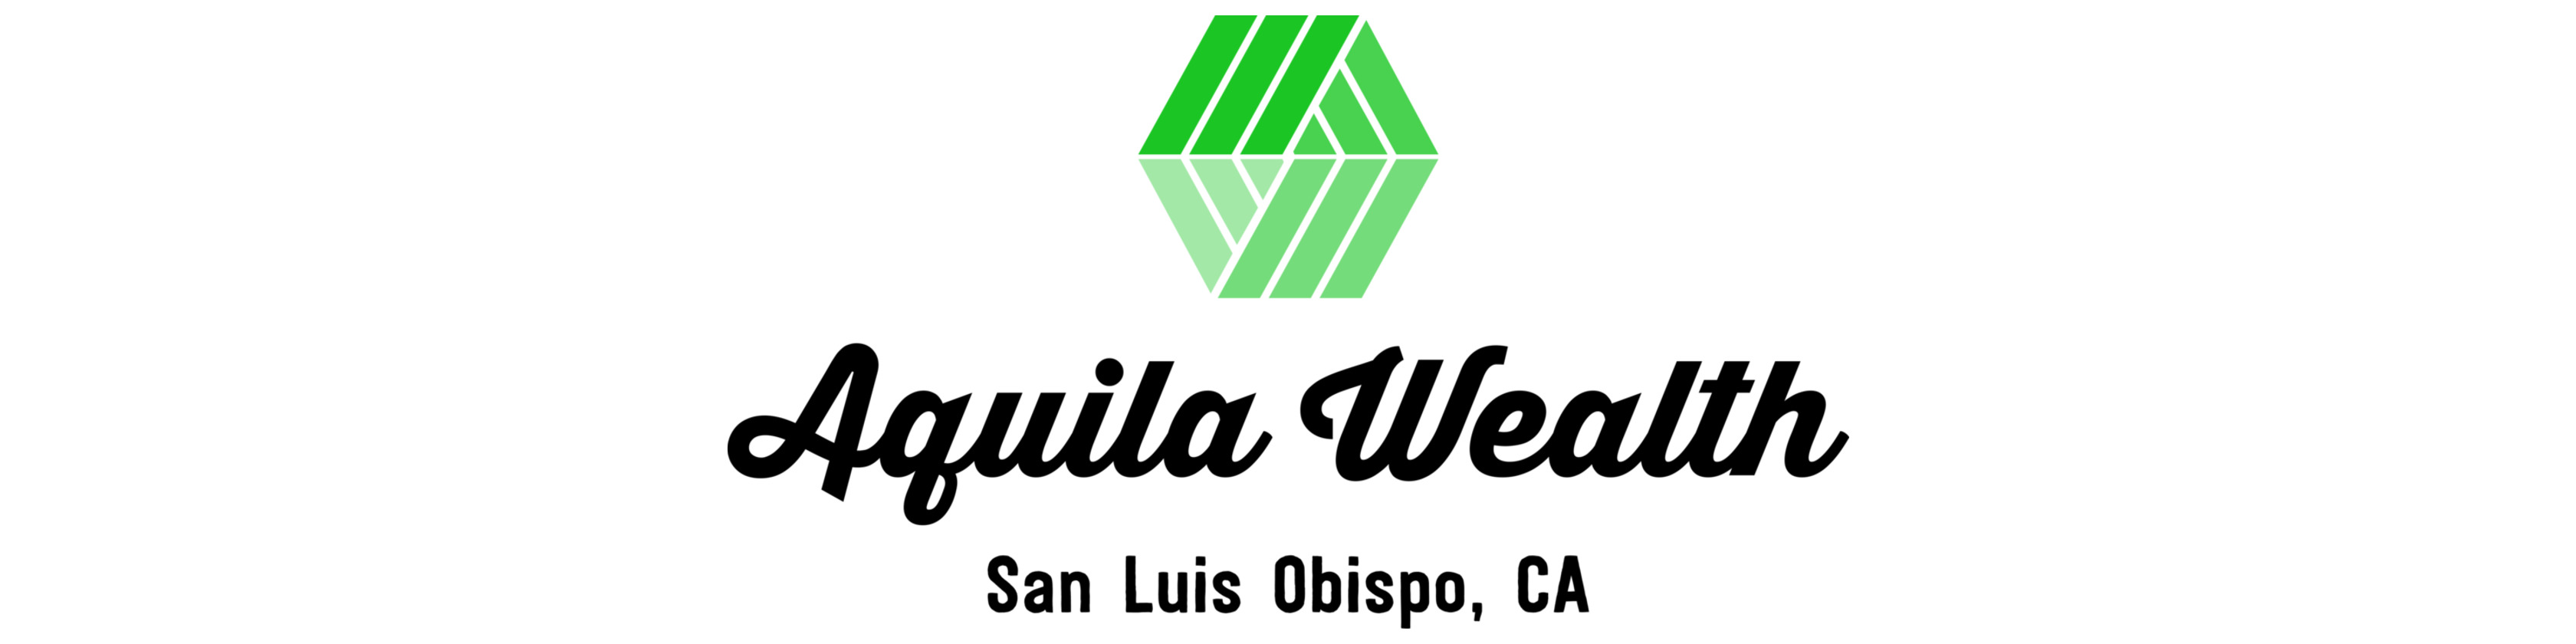 Aquila Wealth Advisors, LLC